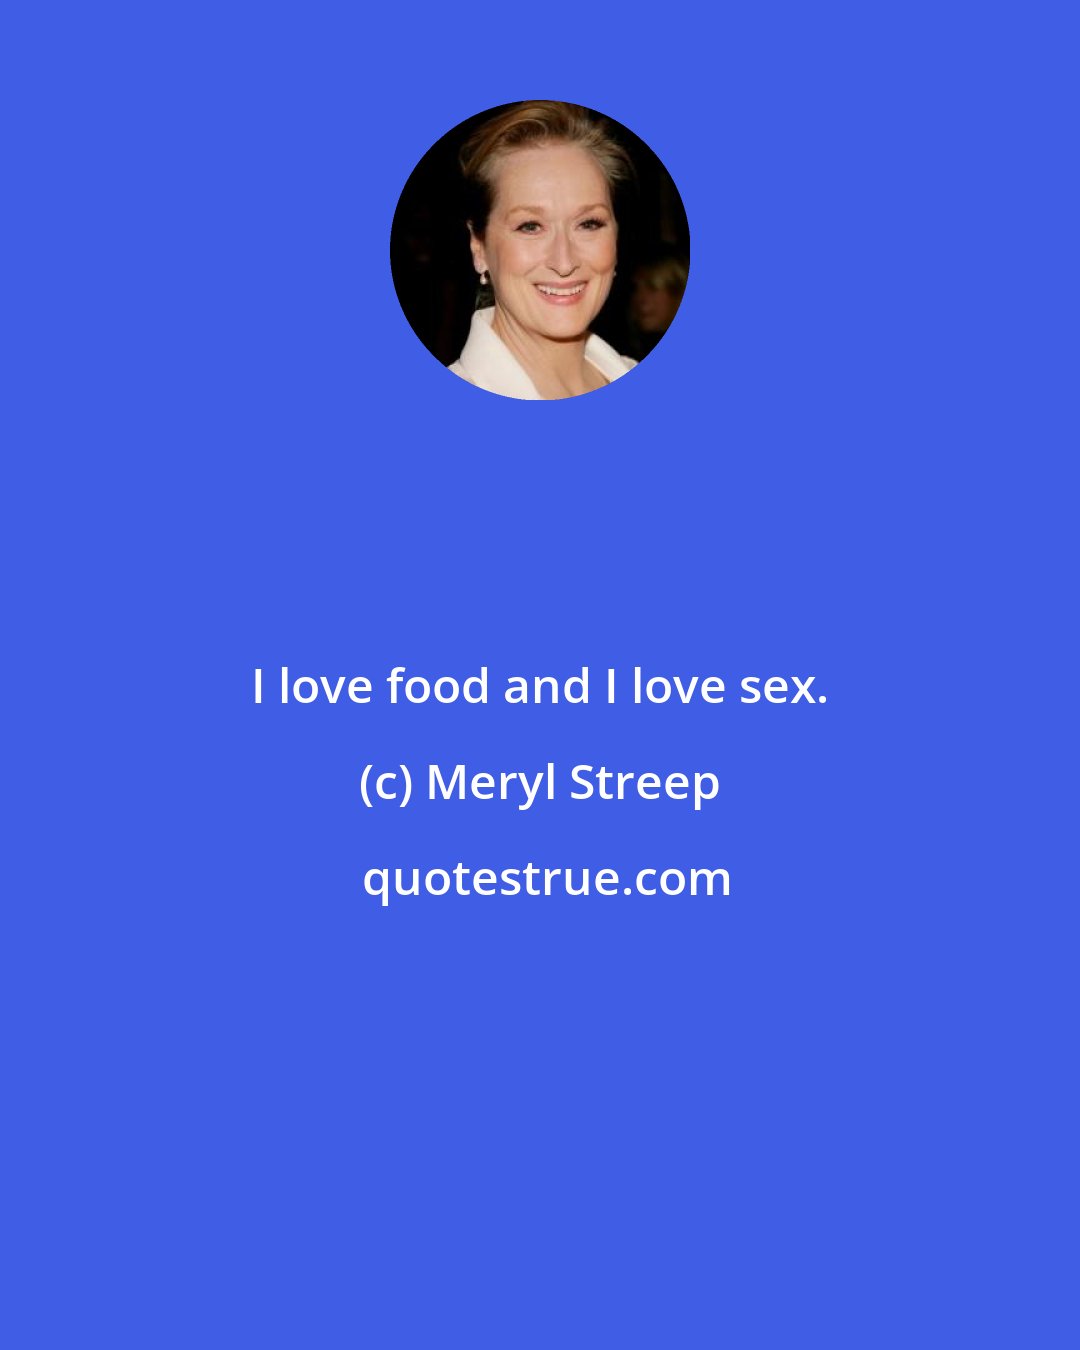 Meryl Streep: I love food and I love sex.